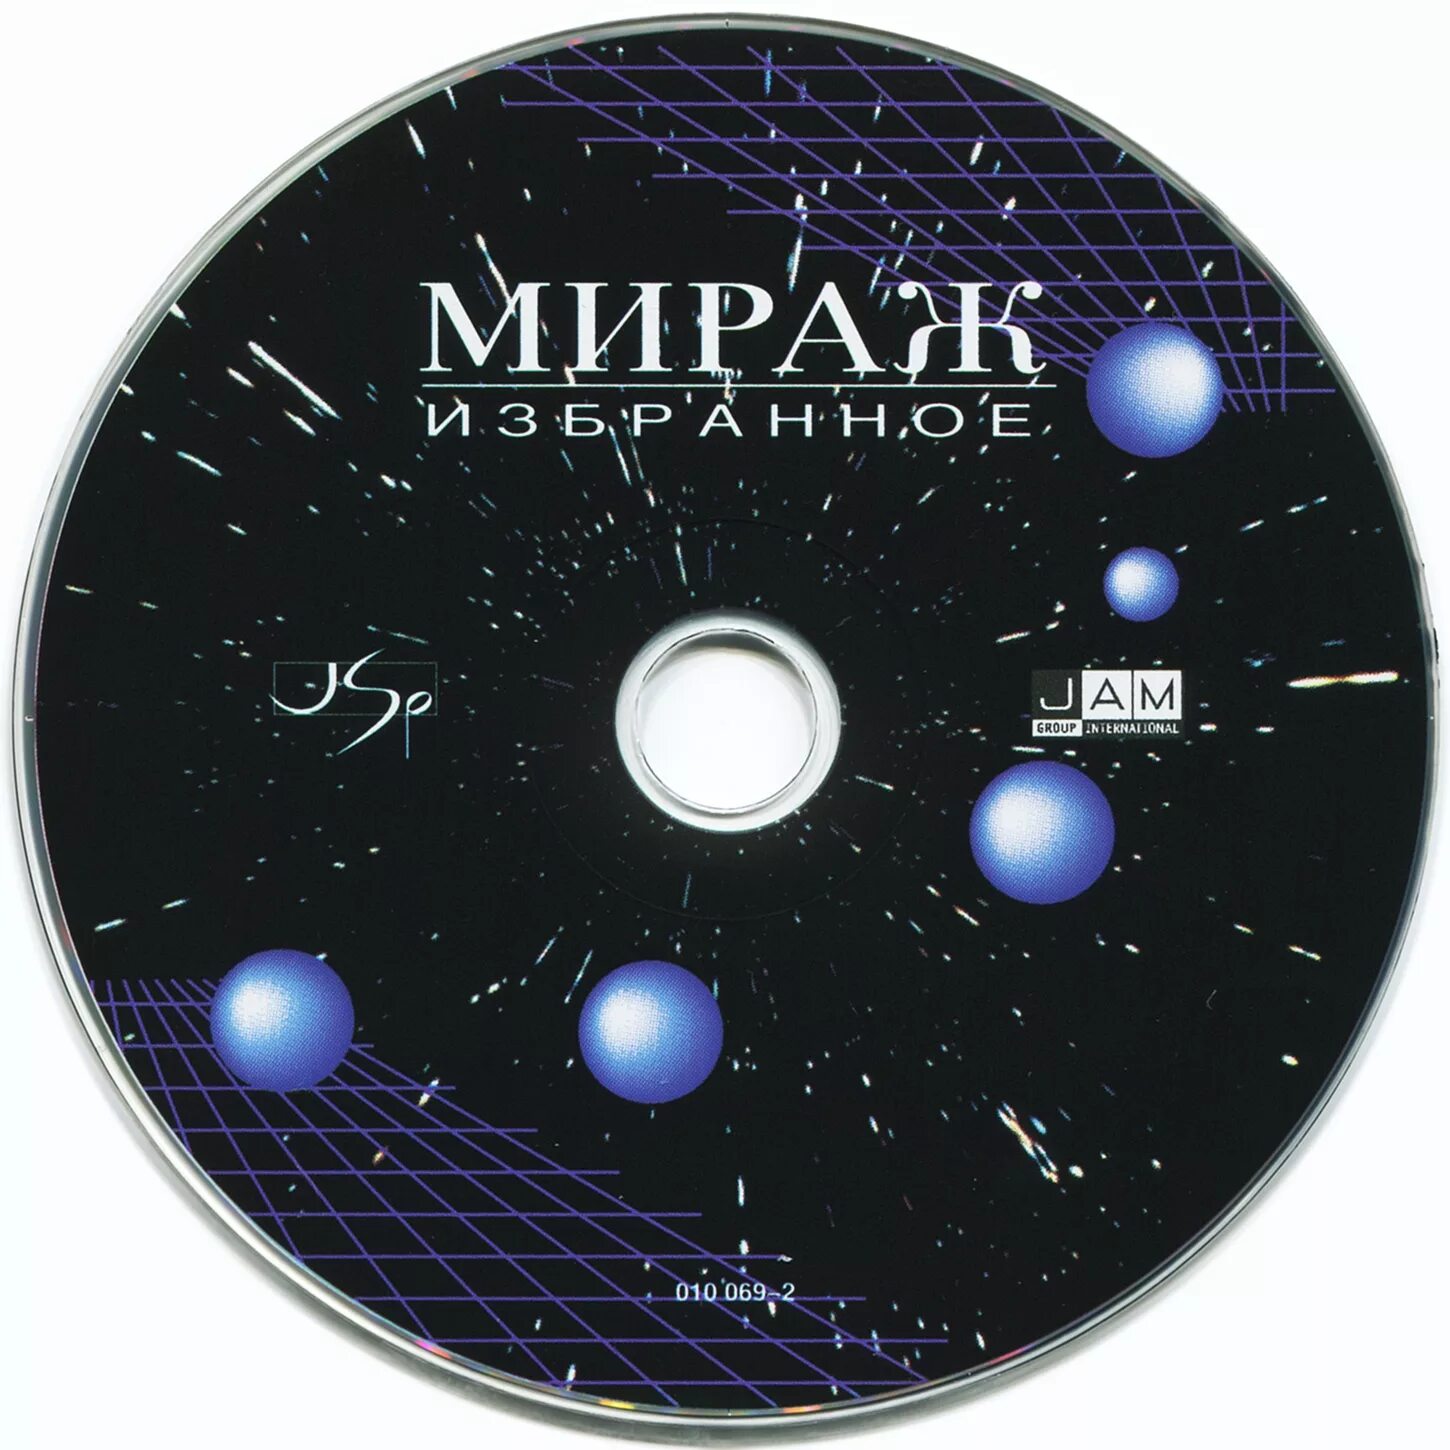 Аудиокнига мираж. Группа Мираж обложка. CD Мираж избранное 1994. Группа Мираж обложки альбомов. Мираж компакт диски мп3.